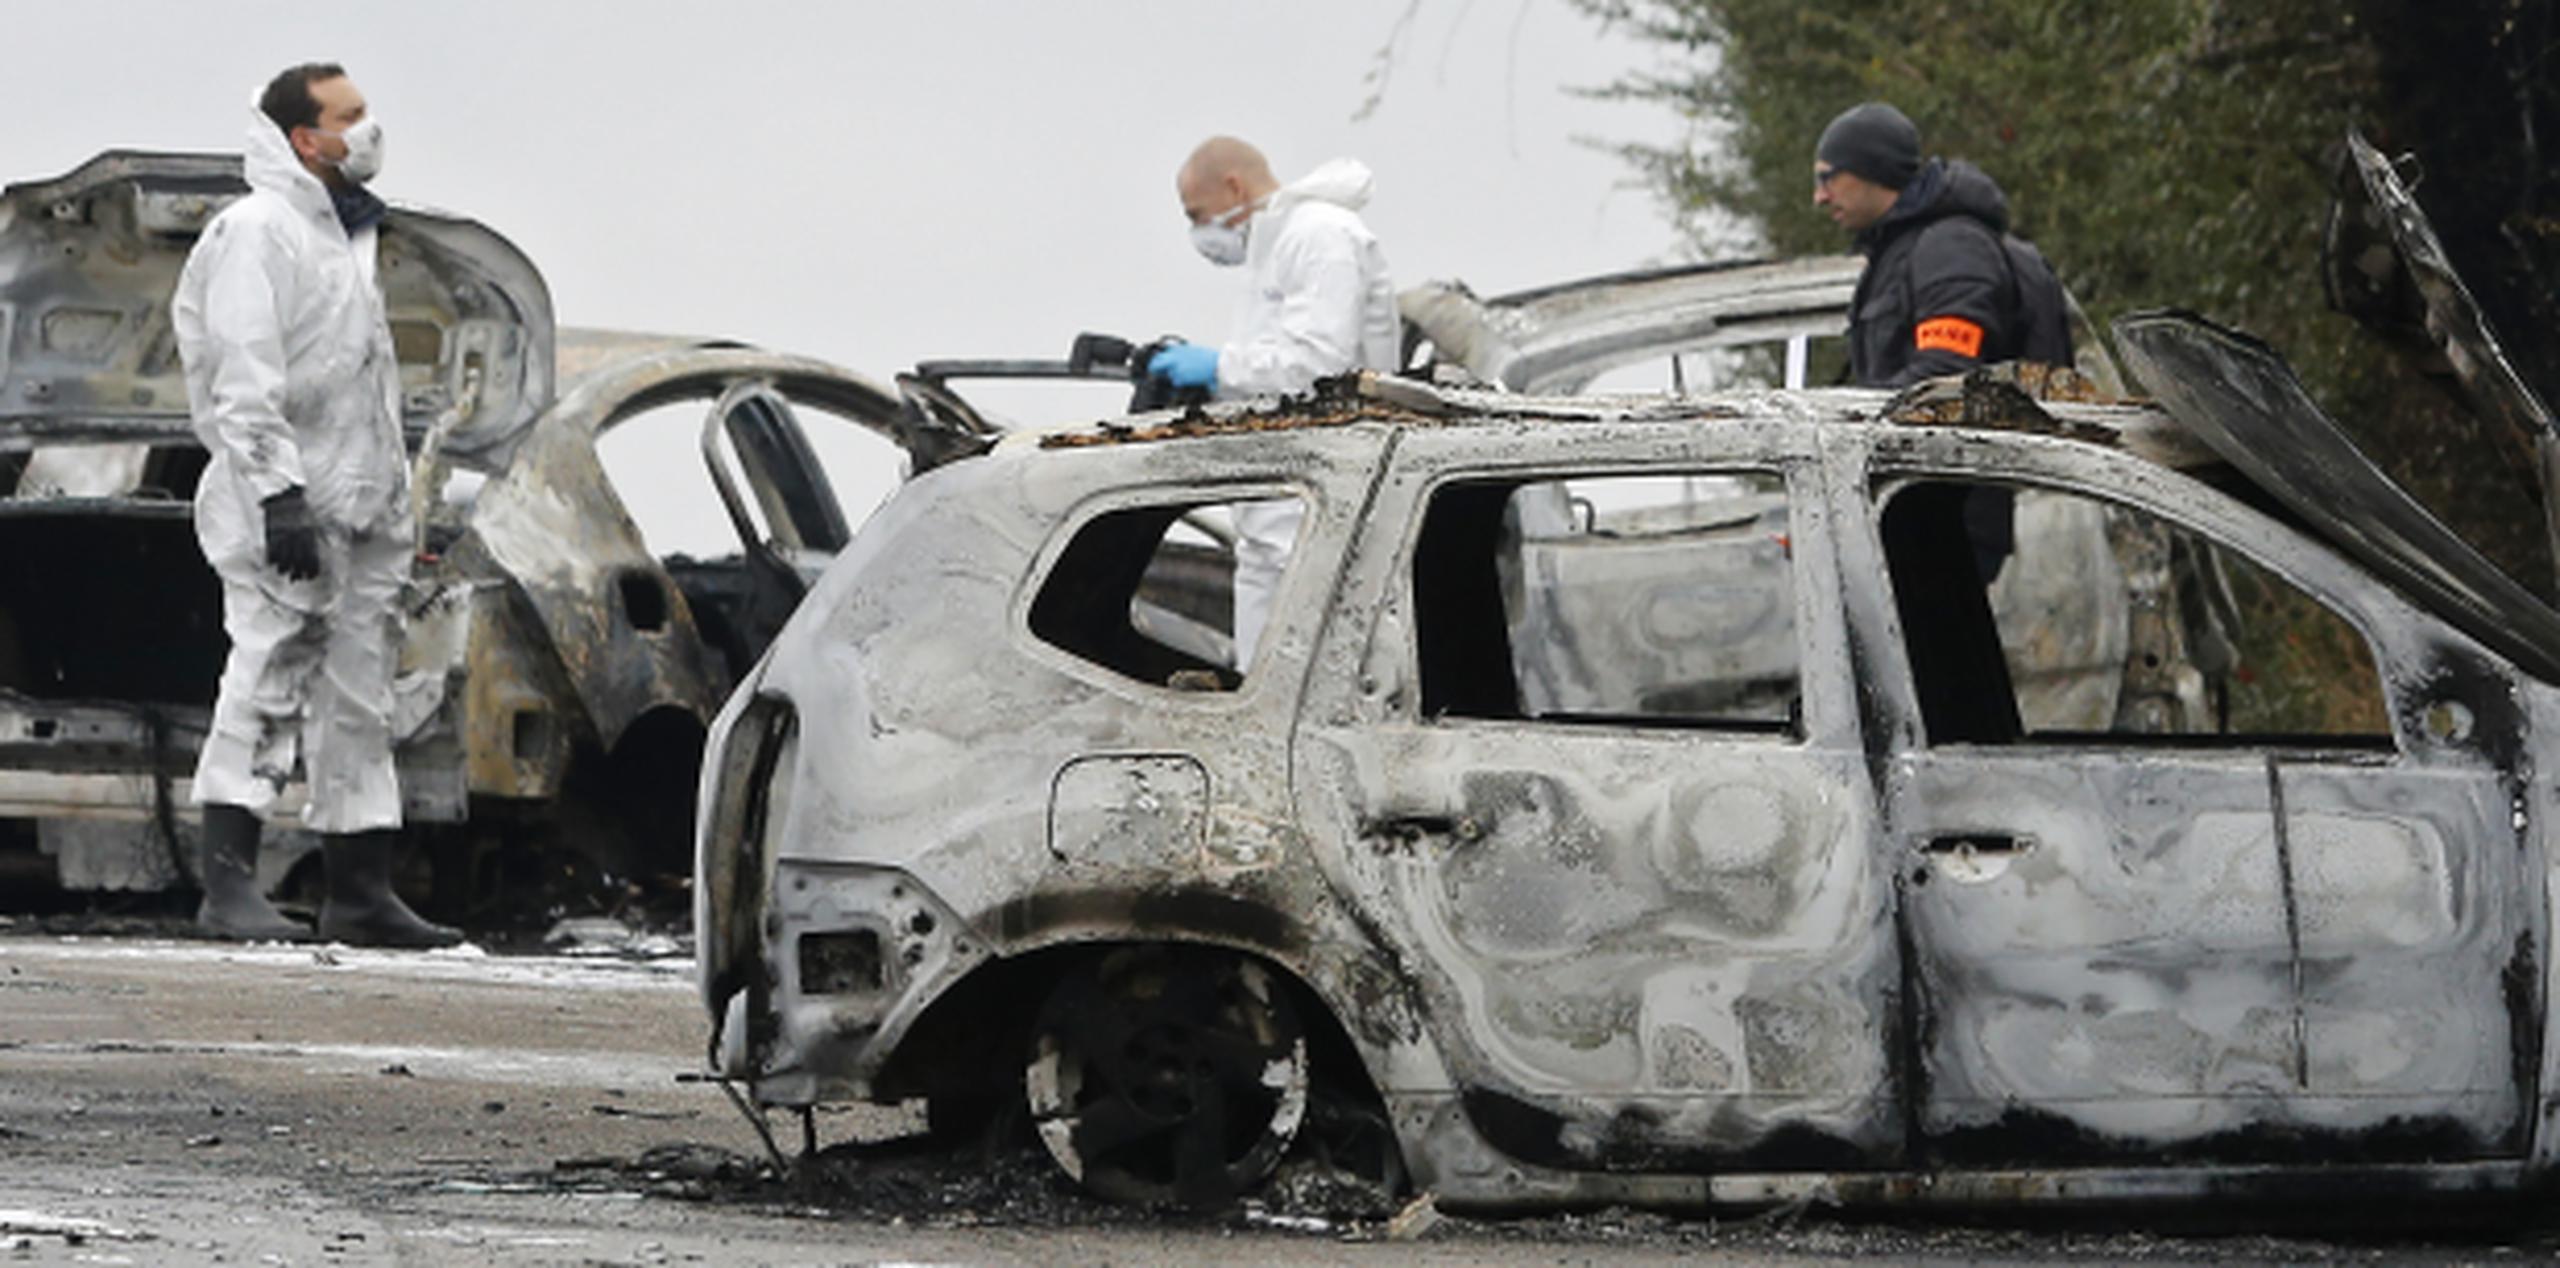 Policías inspeccionan los autos incendiados como parte de su investigación al robo del camión en París. (AP)